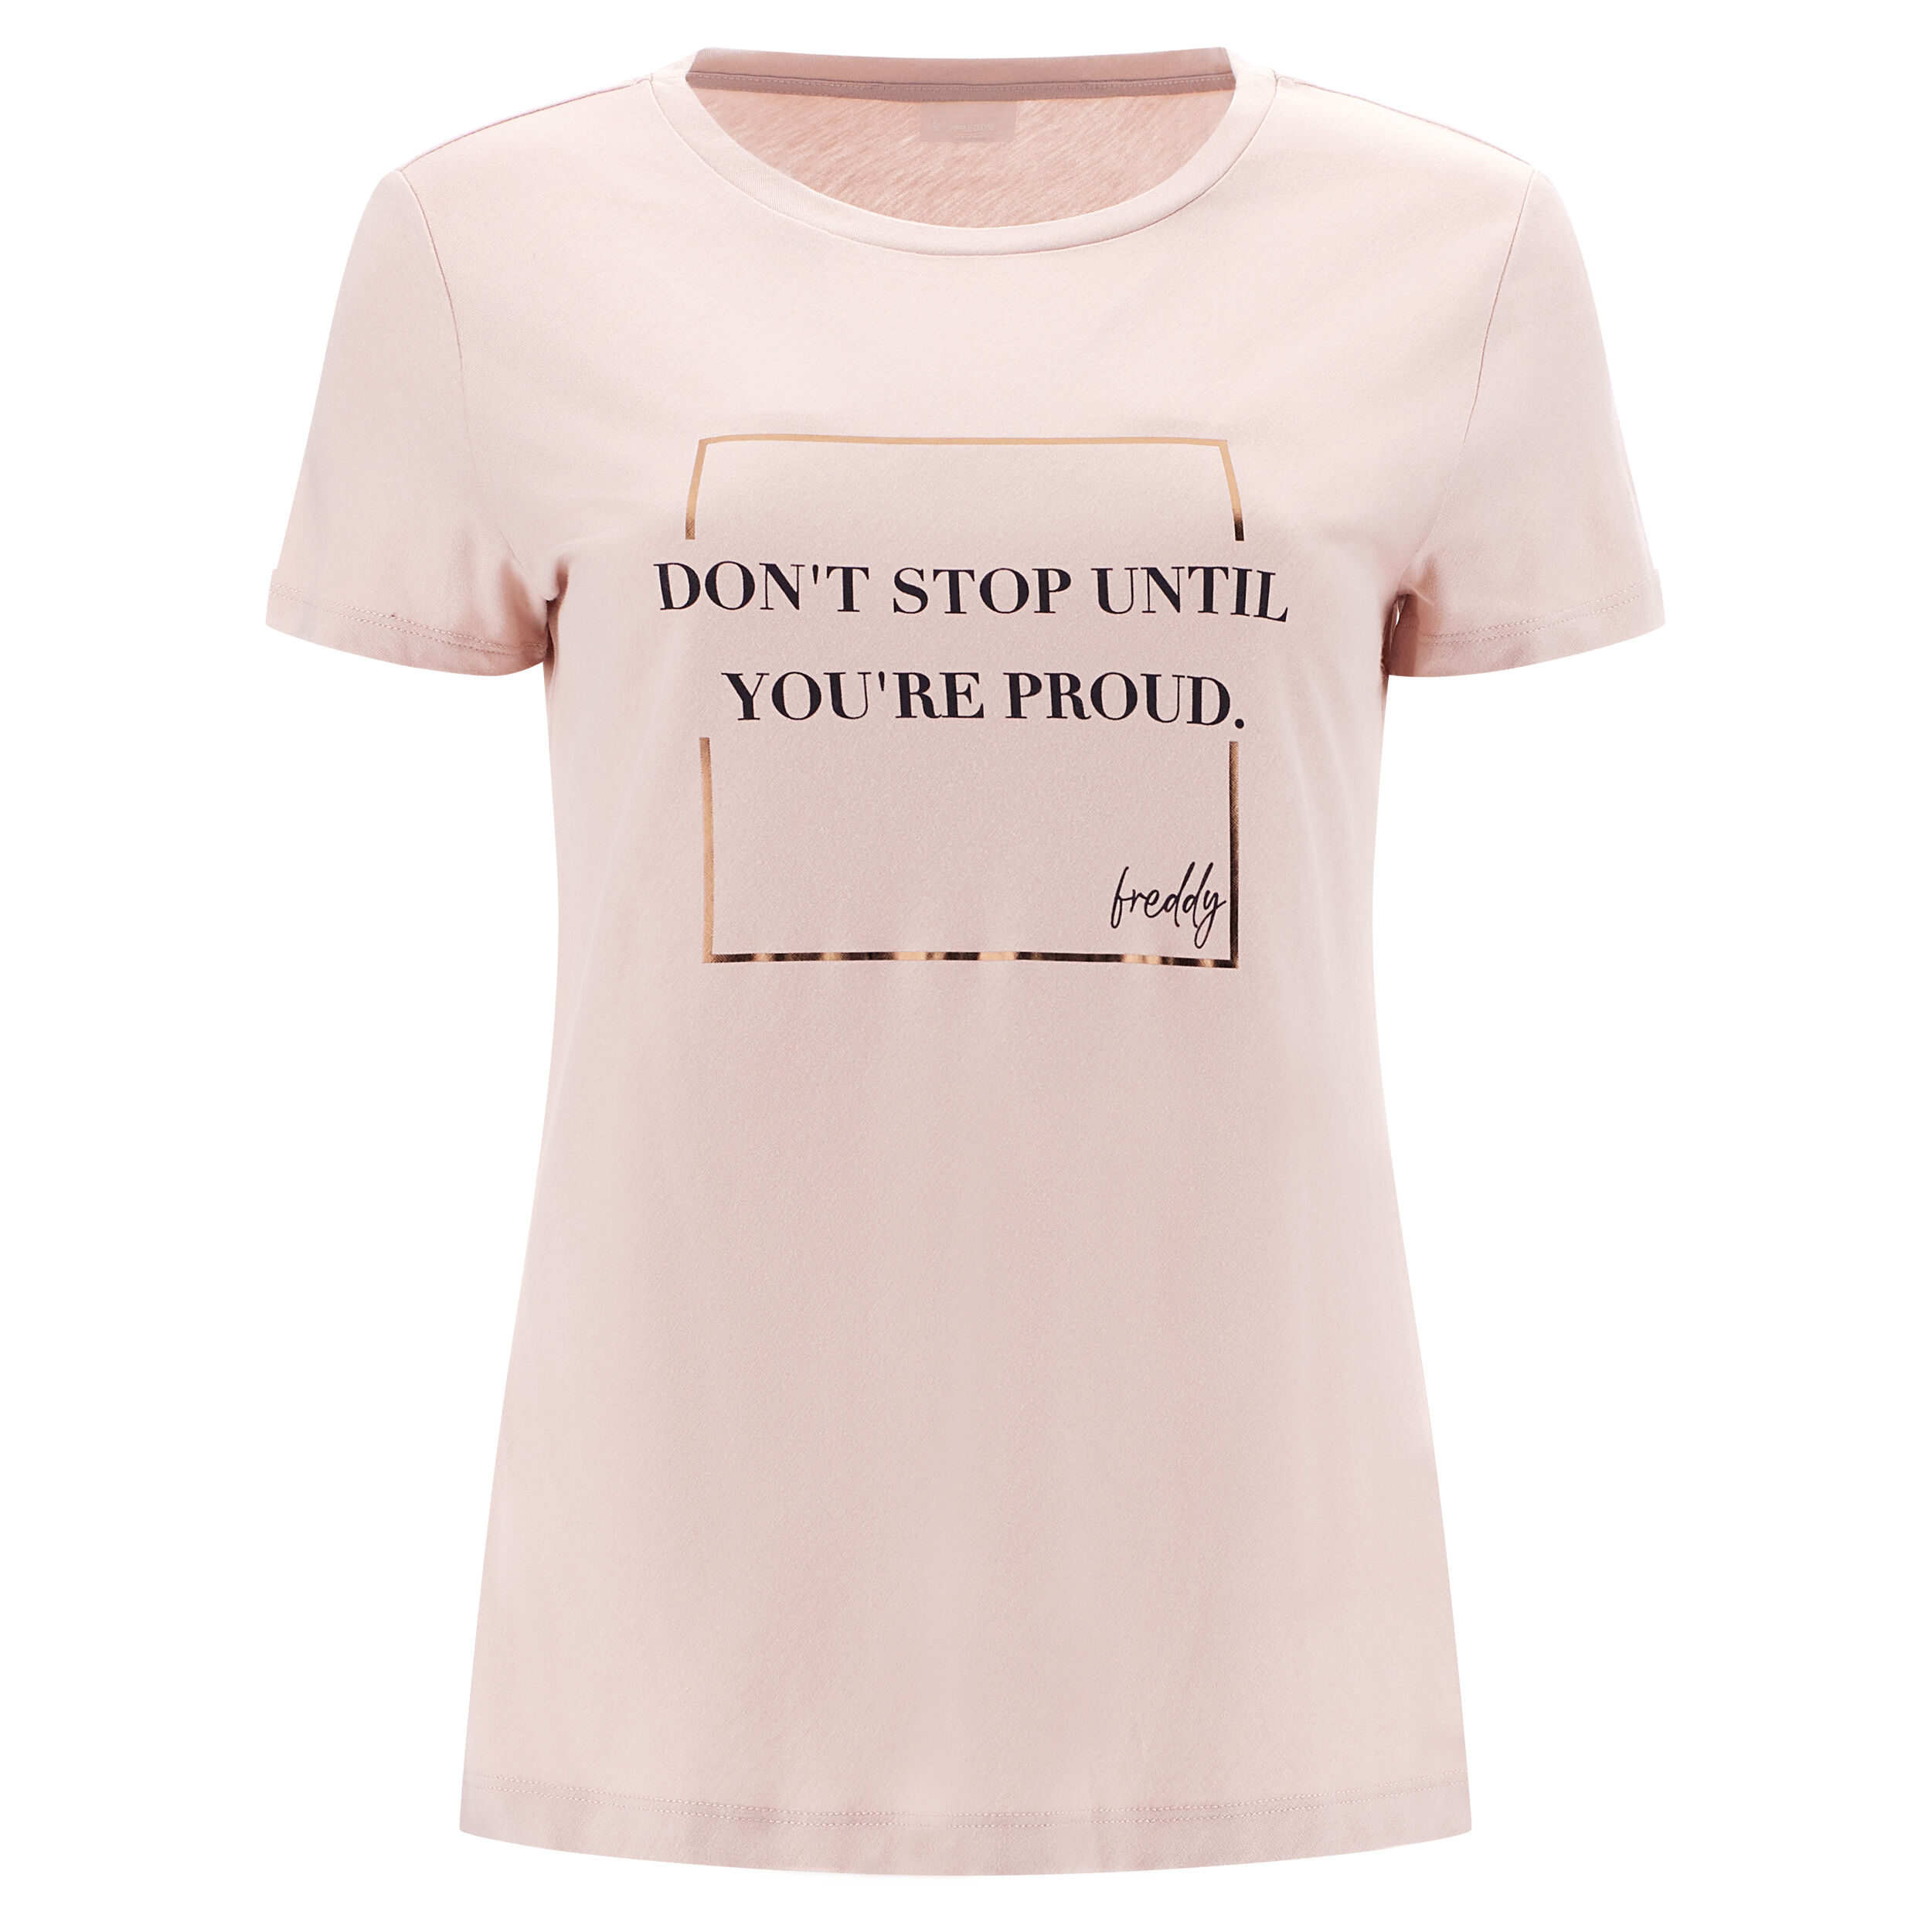 Freddy T-shirt jersey modal stampa lettering con riquadro oro rosa Smoke Rose Donna Small